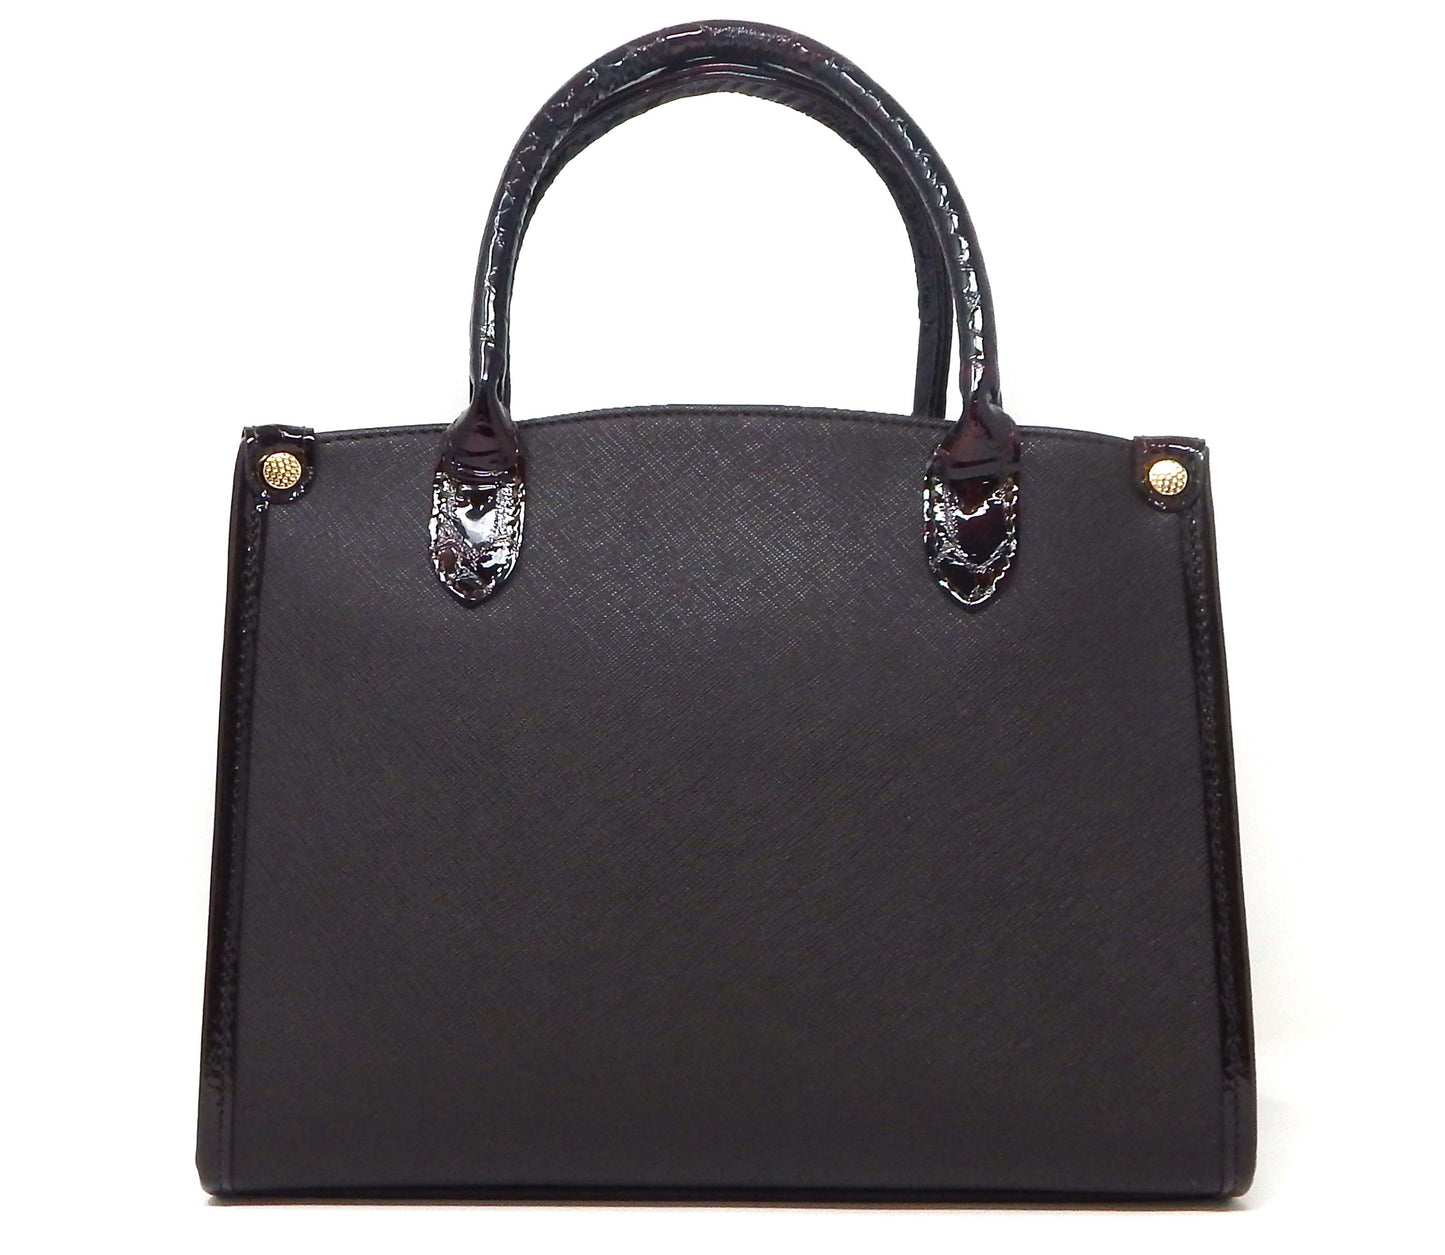 Cavalinho Honor Handbag - Brown - 18190480.02.99_3